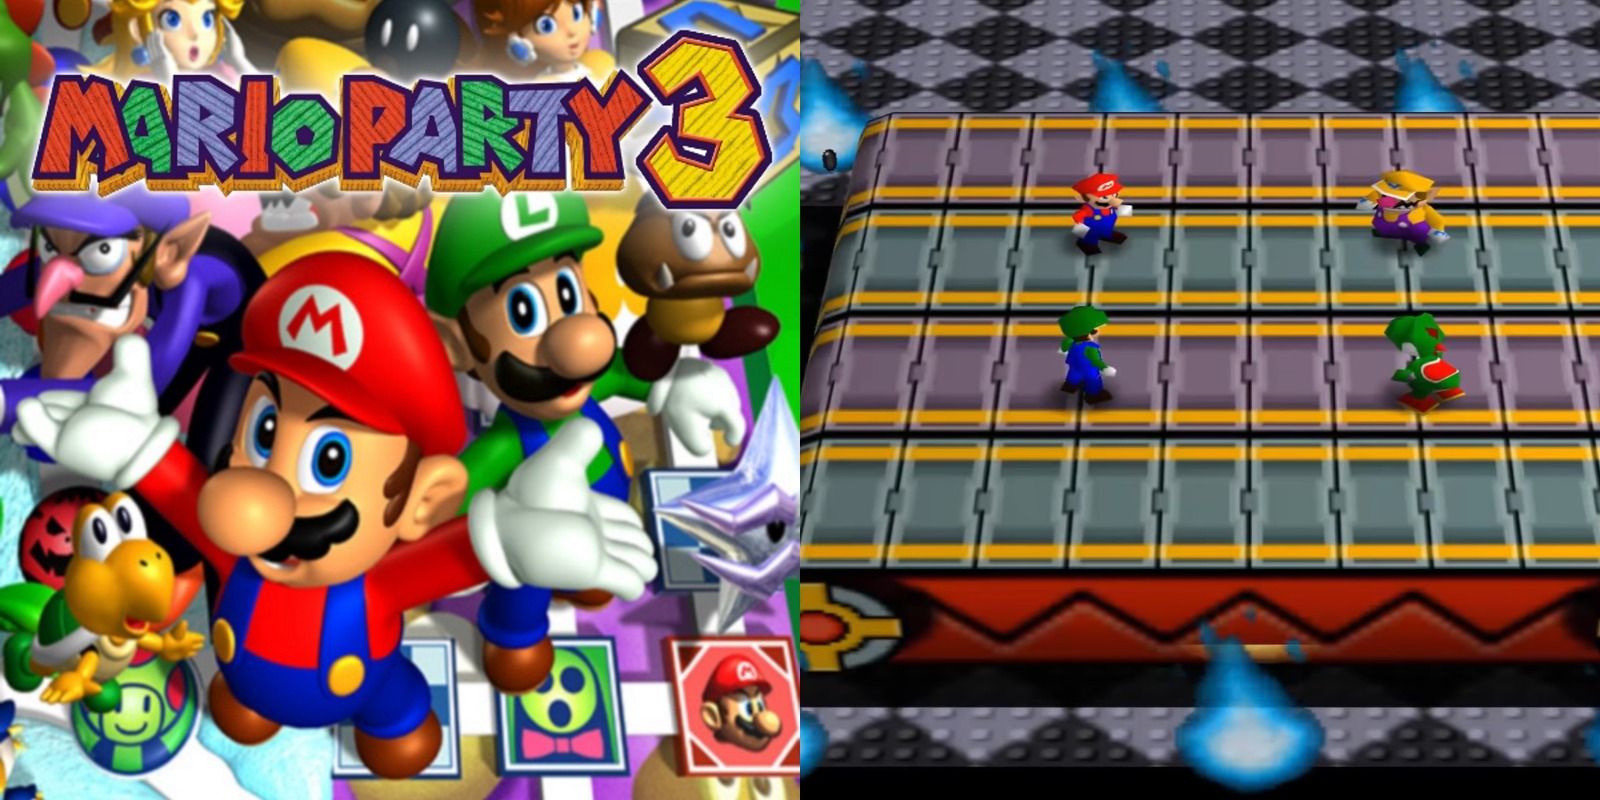 Mario Party 3 for the Nintendo 64